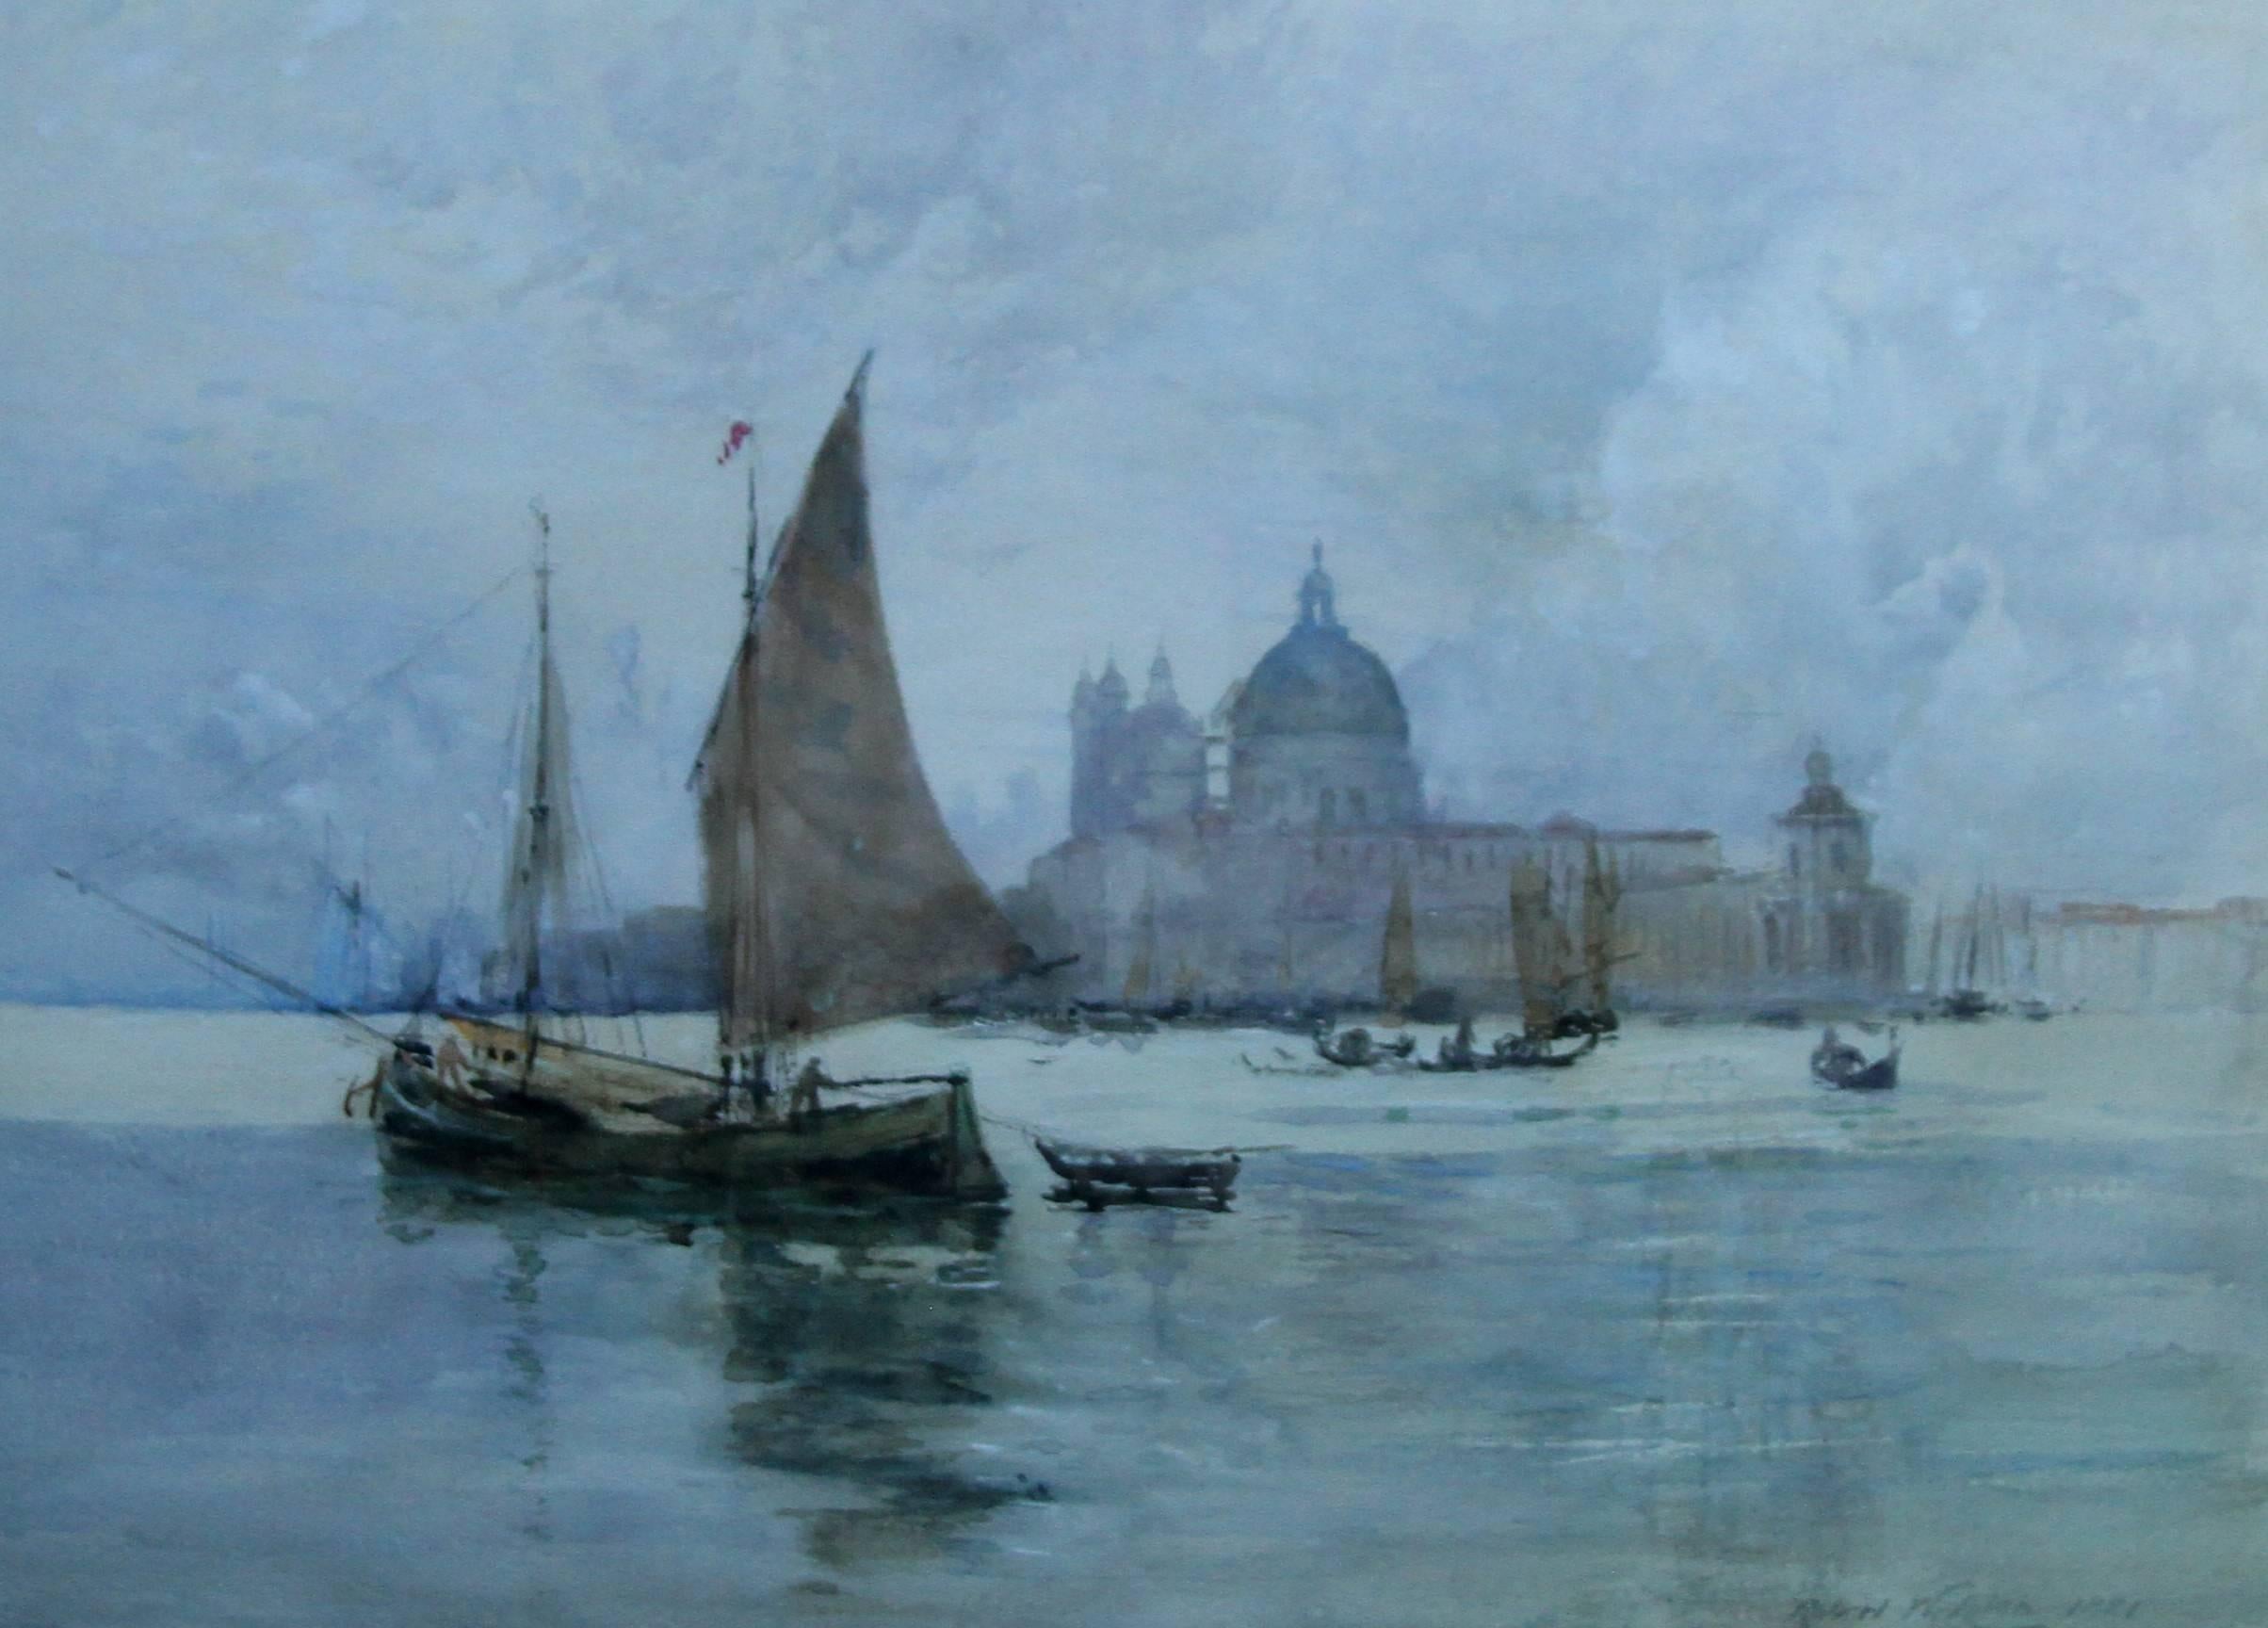 Aquarelle originale datée de 1881 représentant Venise depuis la lagune avec des bateaux et le palais des Doges au loin. Peint par Robert Weir Allan, un artiste écossais qui a beaucoup voyagé et qui est bien connu pour ses aquarelles et ses peintures